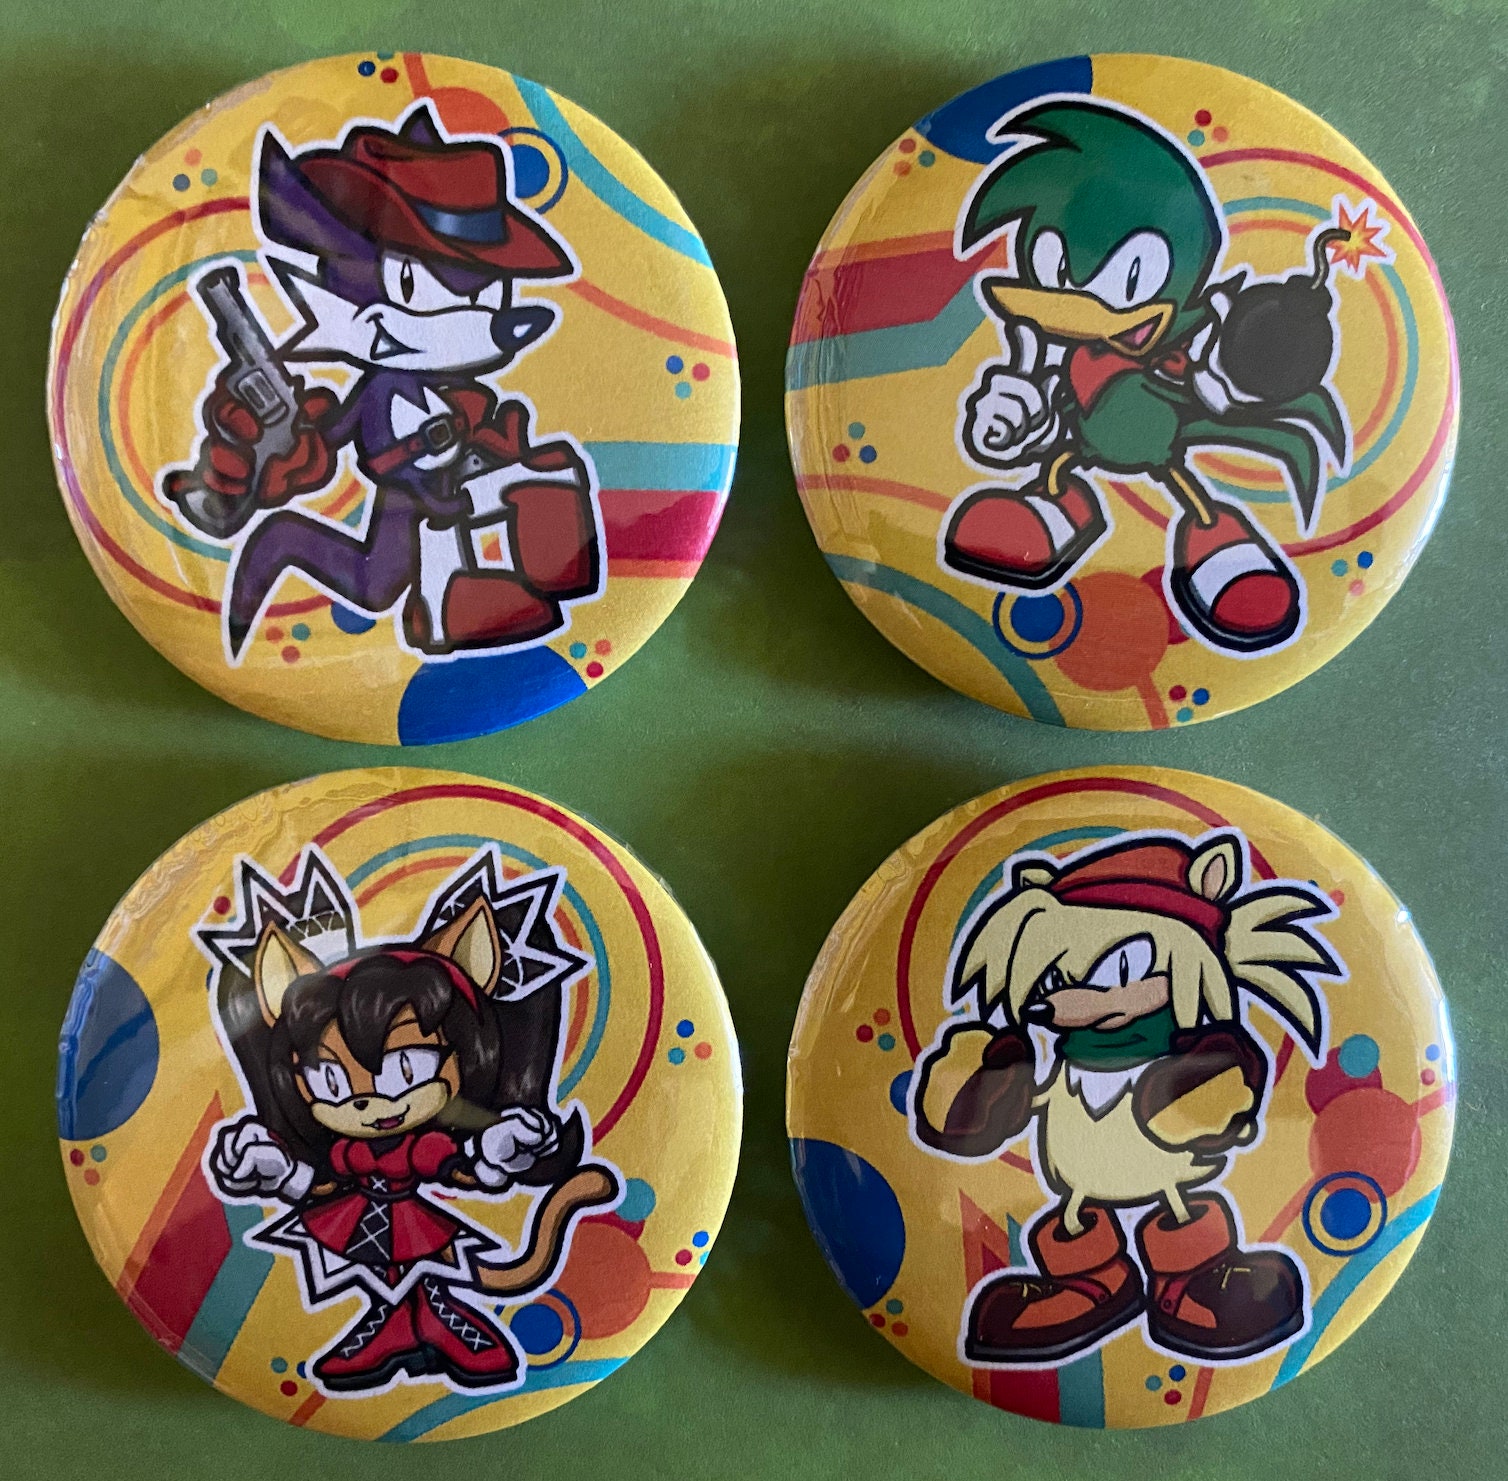 Jogo Sonic Mania (Collectors Edition) - Switch em Promoção na Americanas